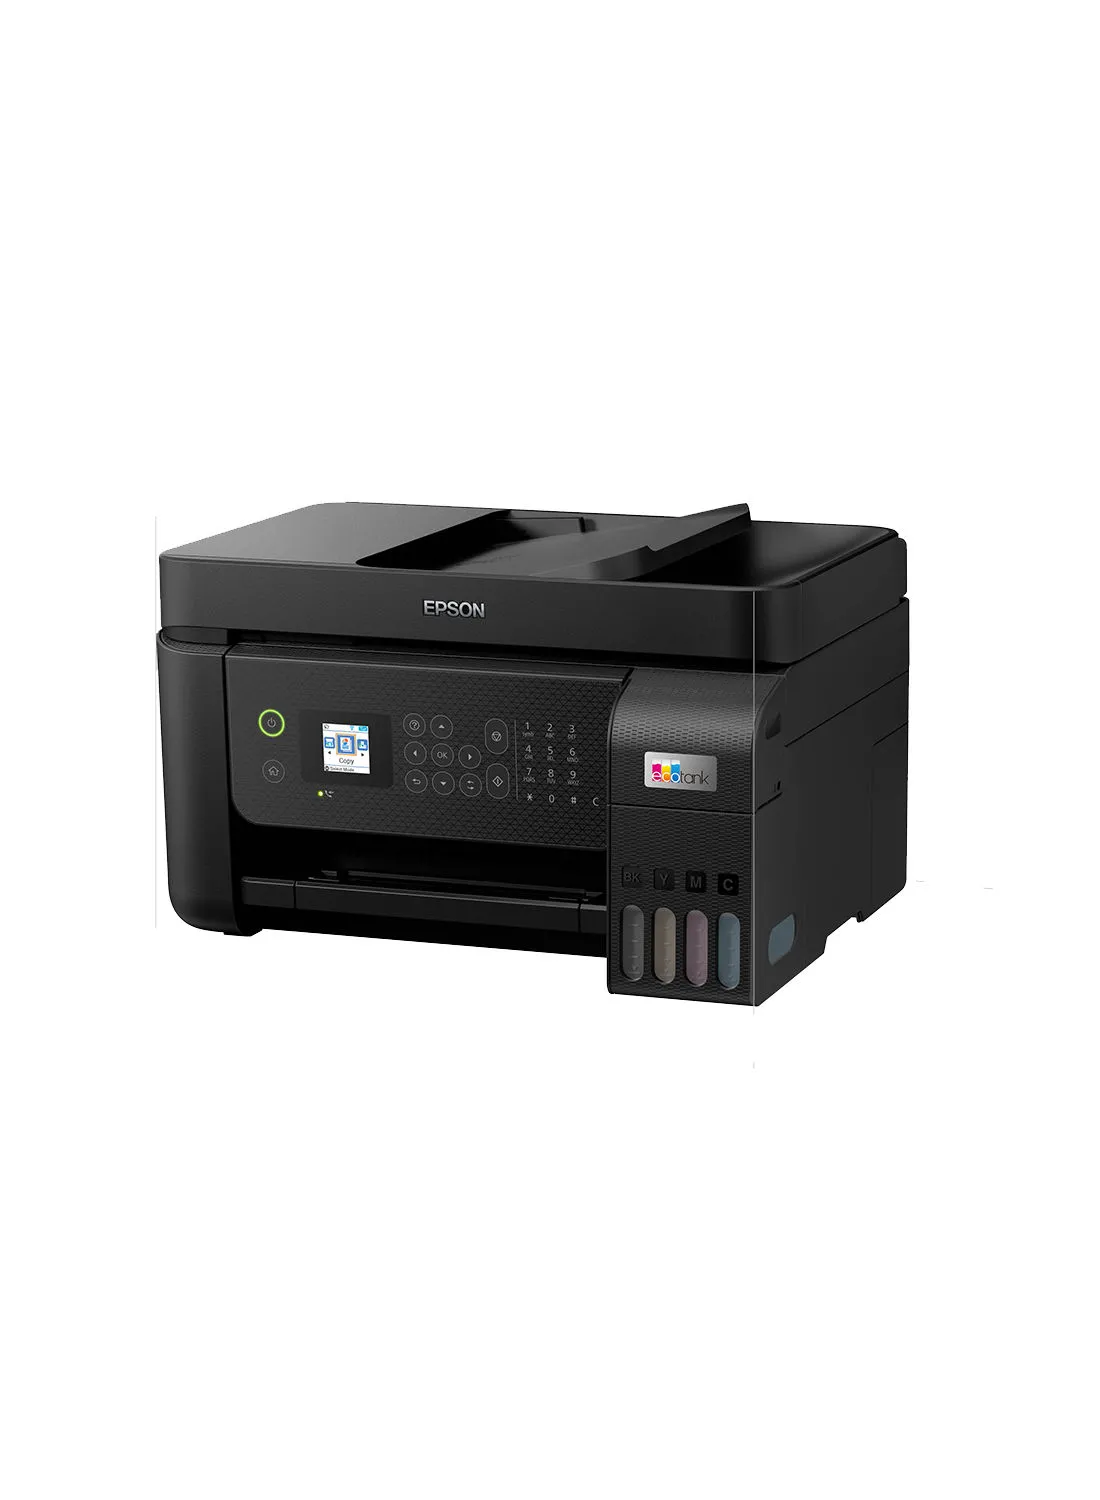 طابعة Epson EcoTank L5290 Office Ink Tank طابعة A4 ملونة 4 في 1 مع ADF و Wi-Fi واتصال لوحة ذكية وشاشة LCD ، أسود